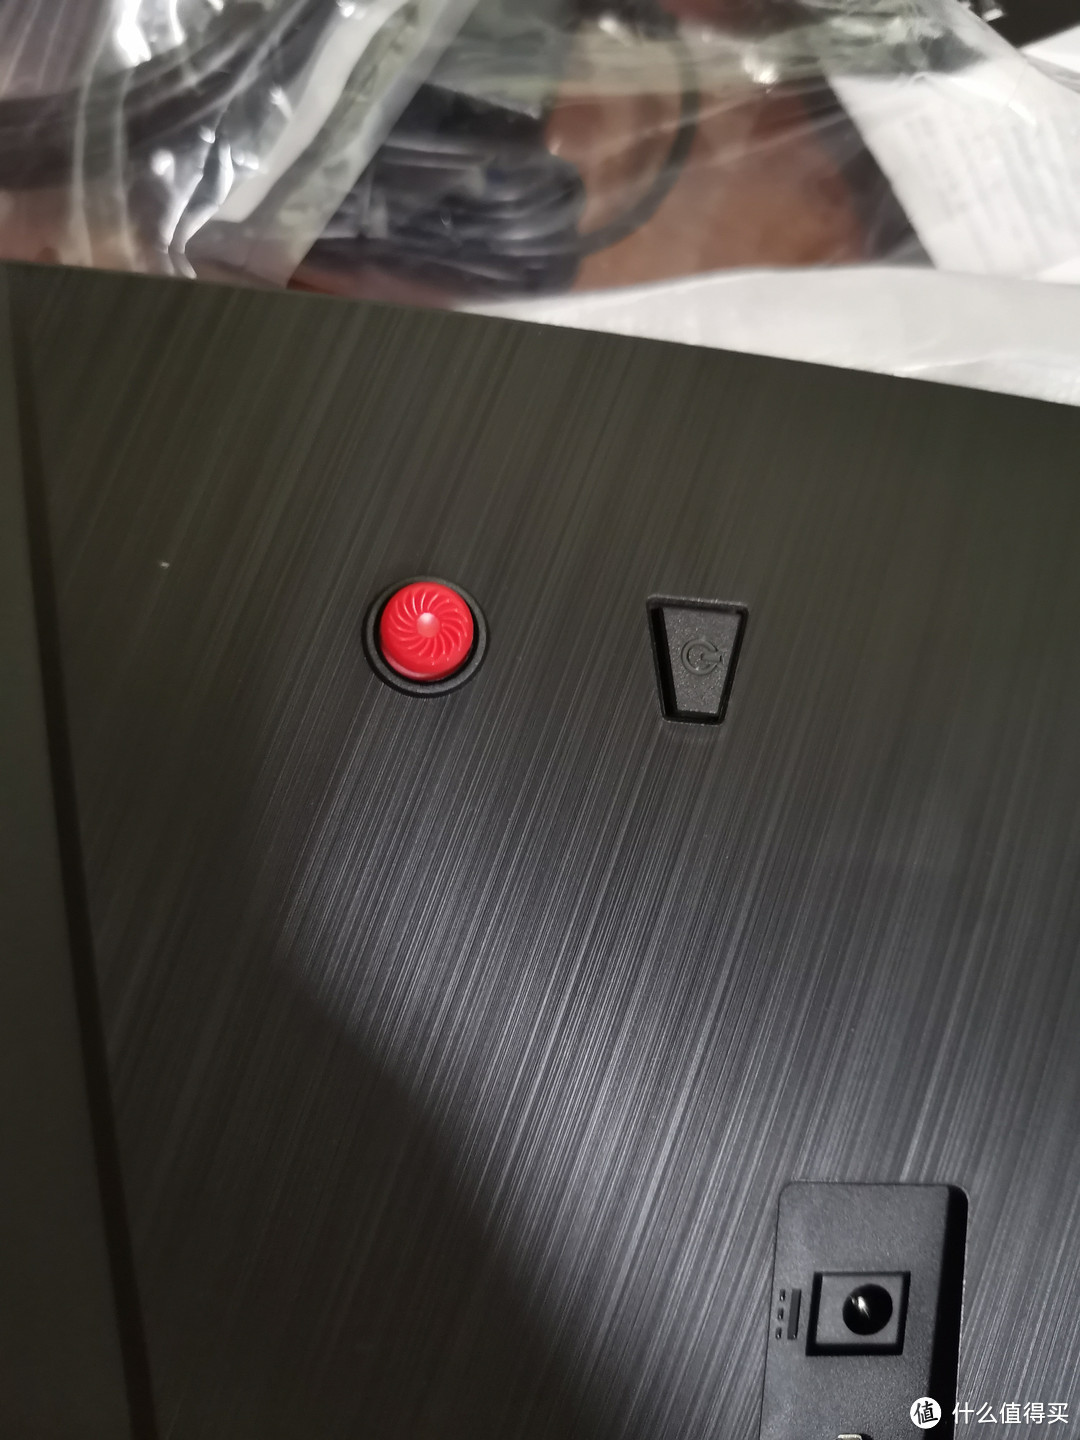 显示器背后红色的菜单控制按钮